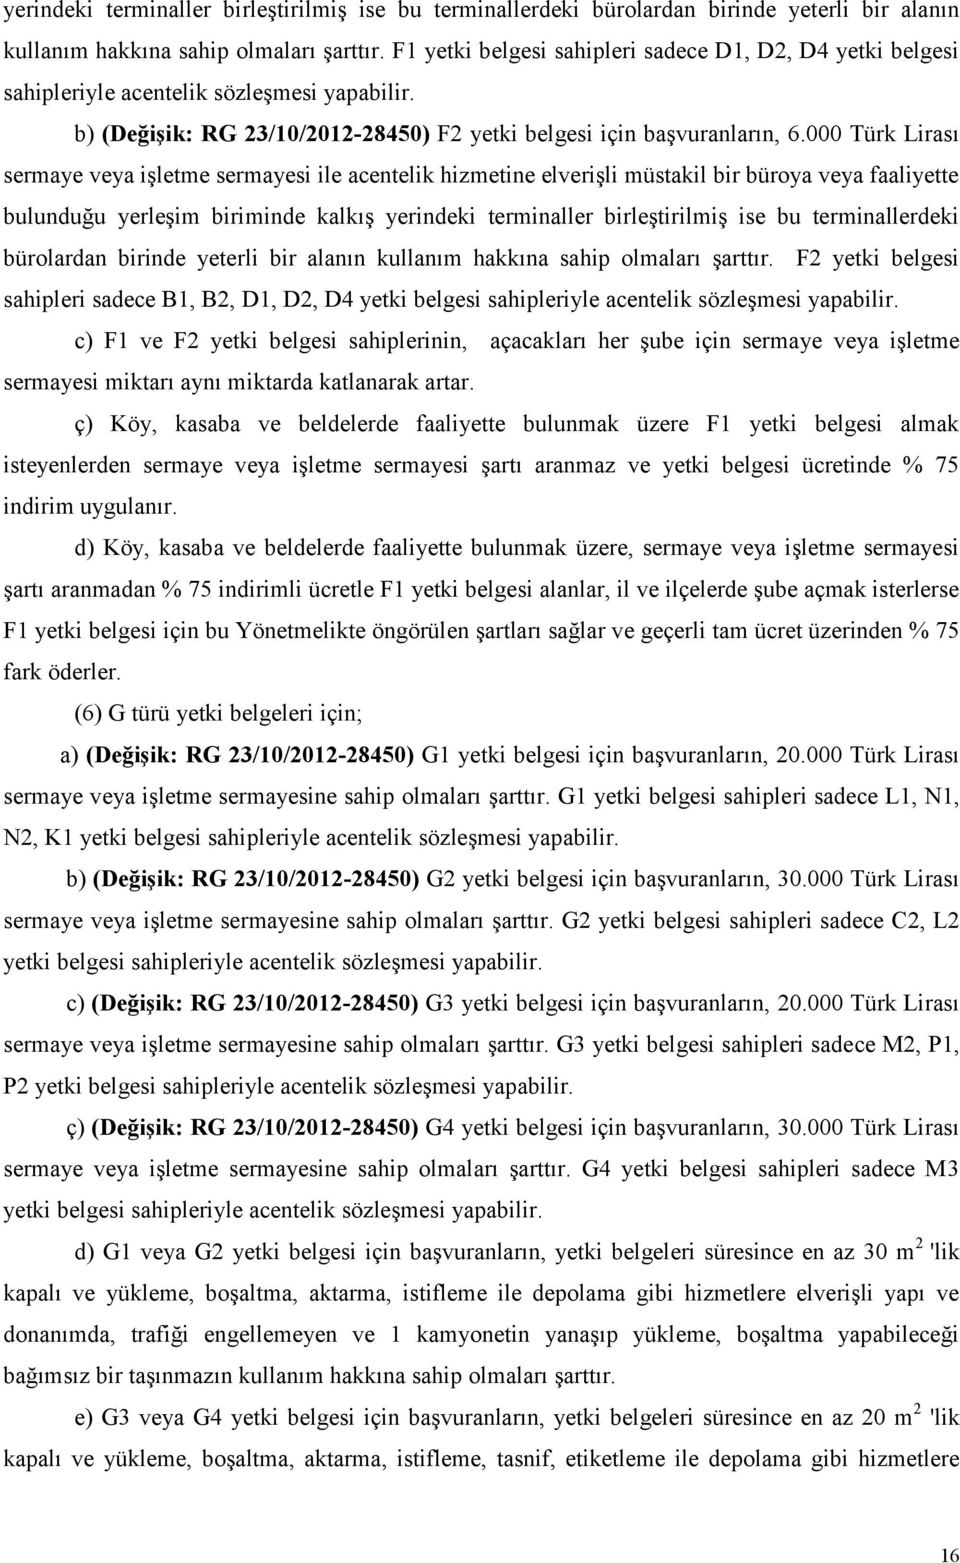 000 Türk Lirası sermaye veya işletme sermayesi ile acentelik hizmetine elverişli müstakil bir büroya veya faaliyette bulunduğu yerleşim biriminde kalkış  F2 yetki belgesi sahipleri sadece B1, B2, D1,